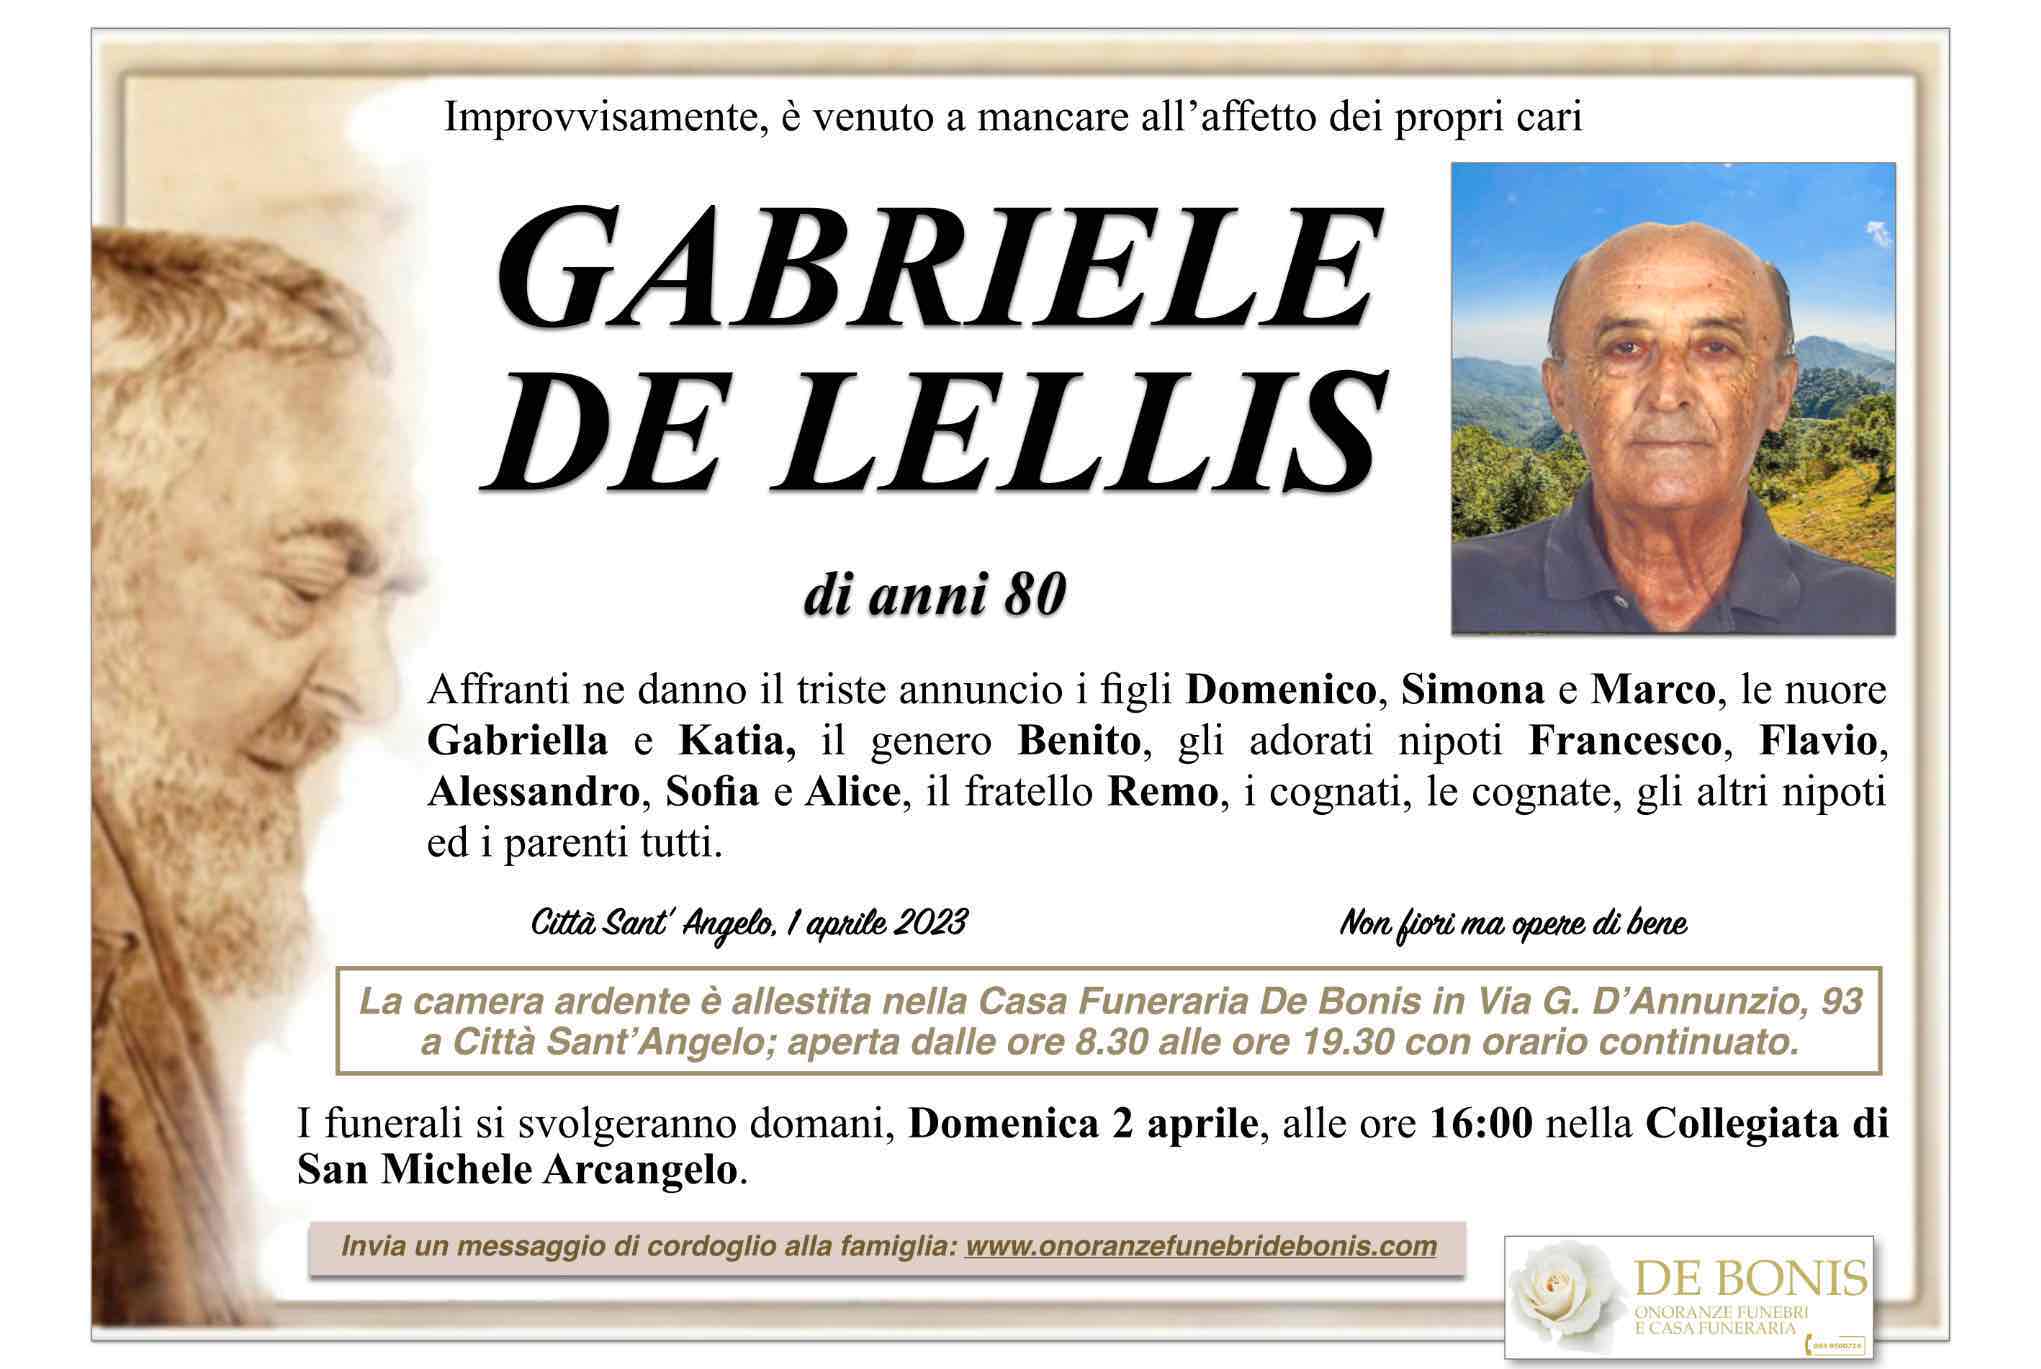 Gabriele De Lellis